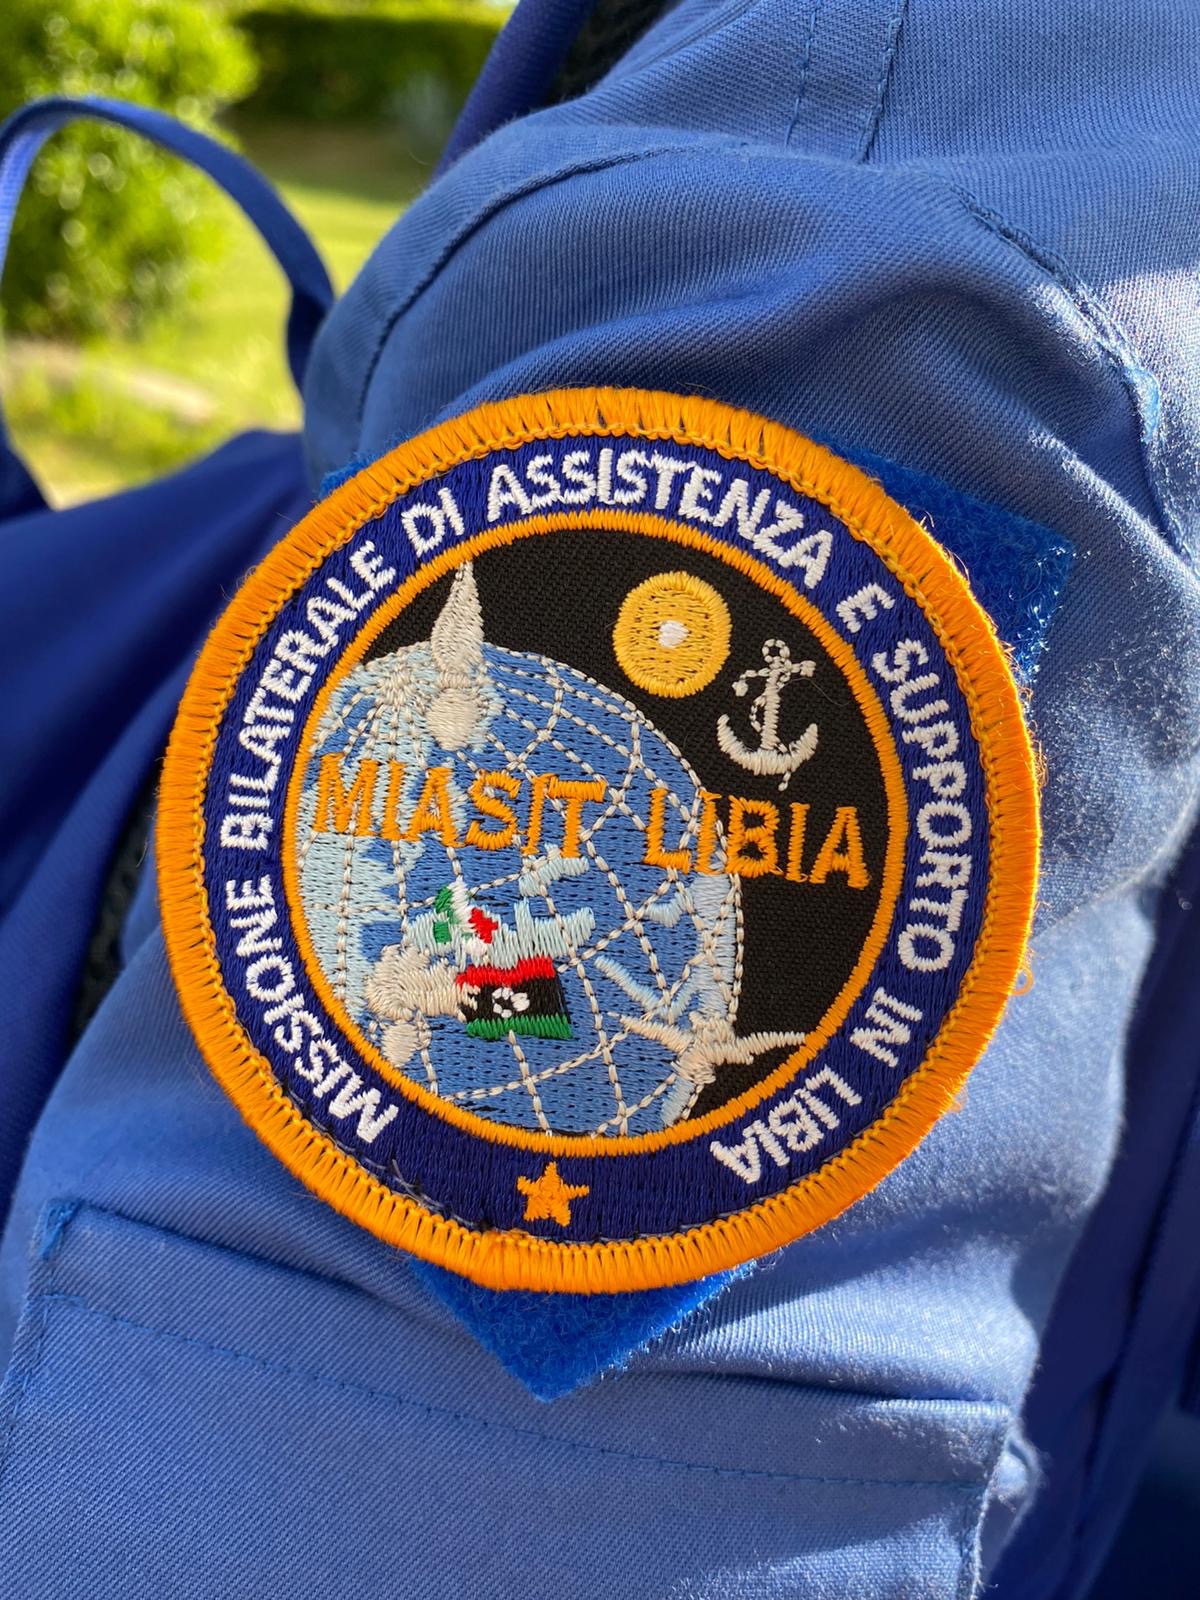 Missione bilaterale MIASIT 1